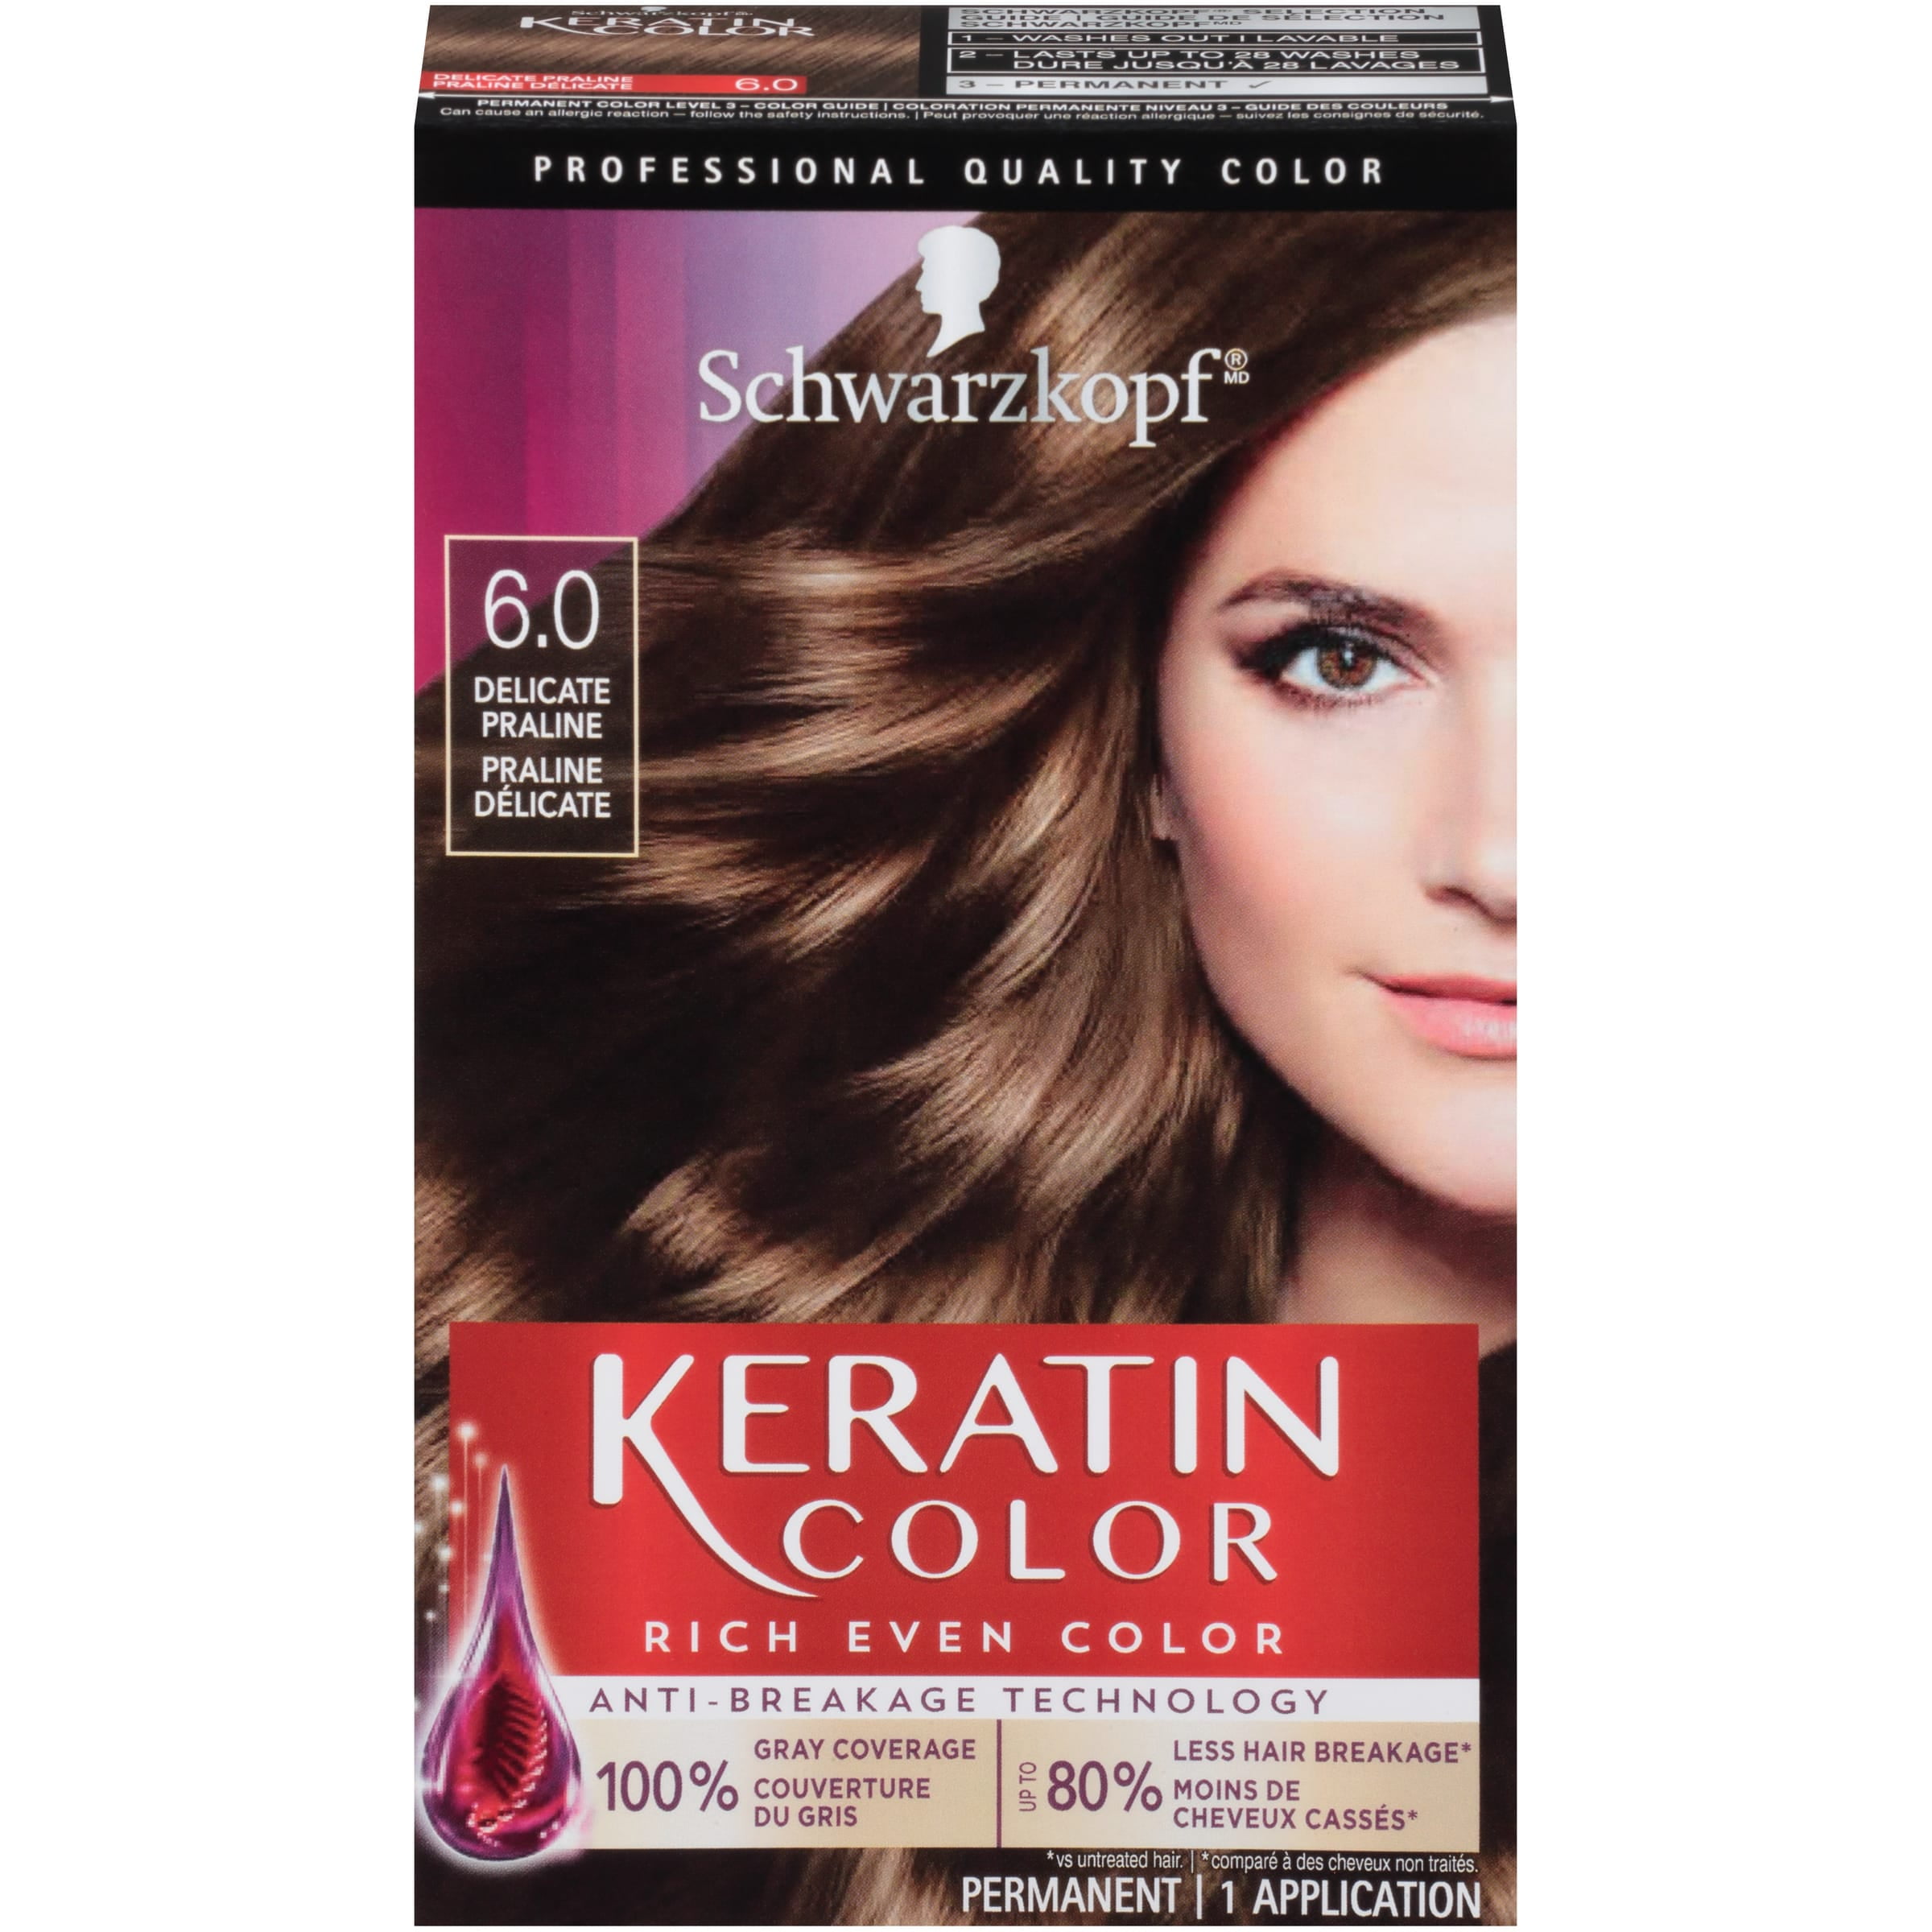 Schwarzkopf Keratin Color Hair Color Cream, 4.0 - Walmart.com